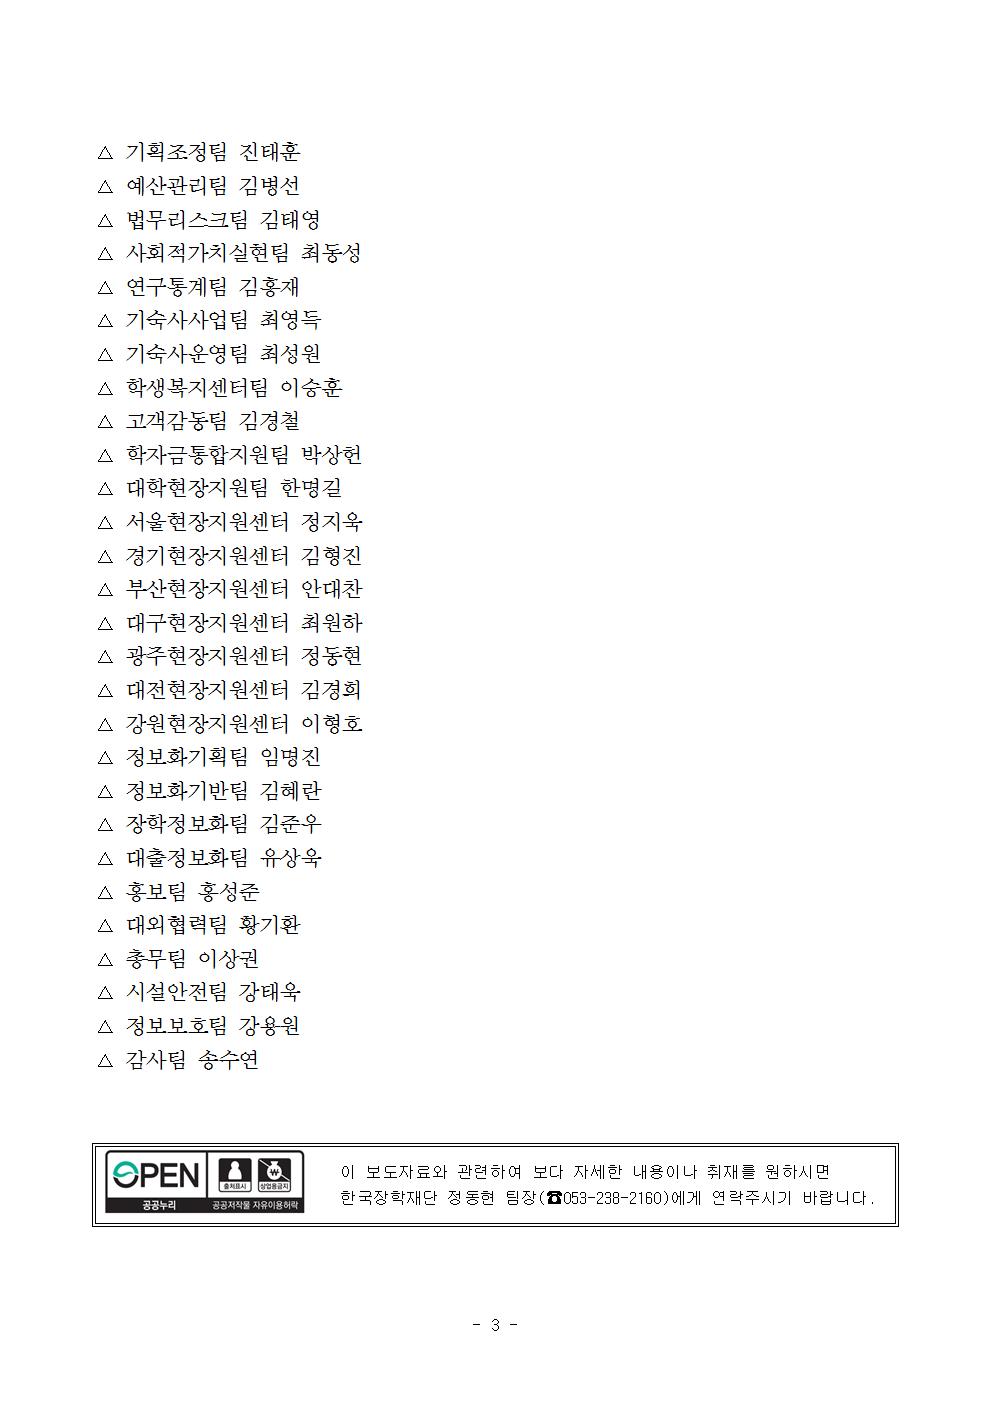 12-28(금)[인사보도자료] 한국장학재단, 2018년 하반기 정기인사 실시003.jpg